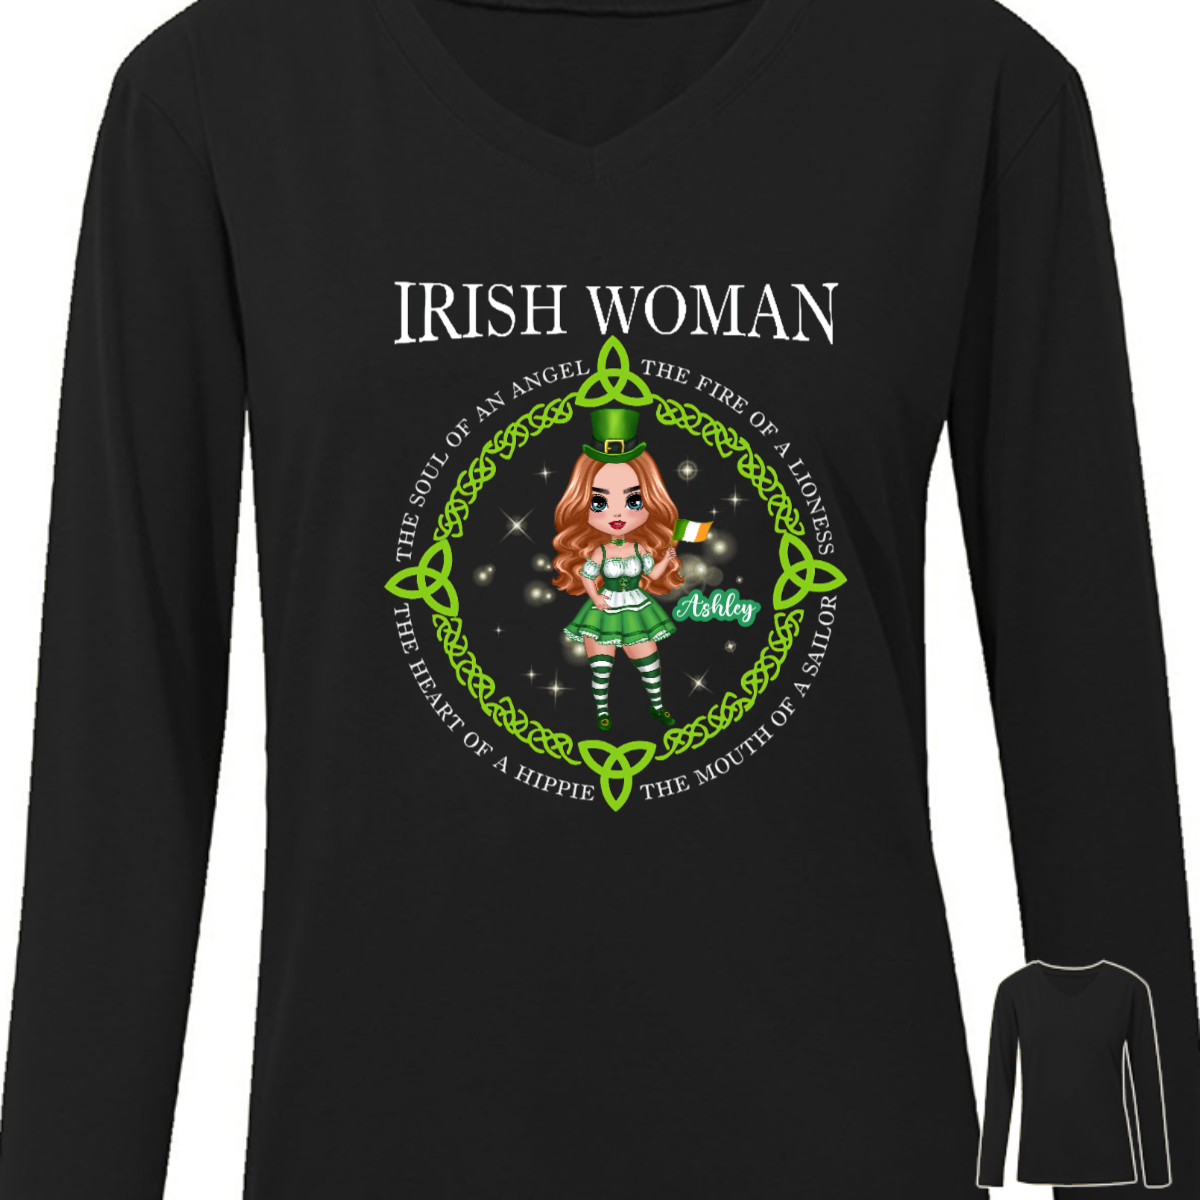 Irish Doll Woman Personalized Long Sleeve Shirt